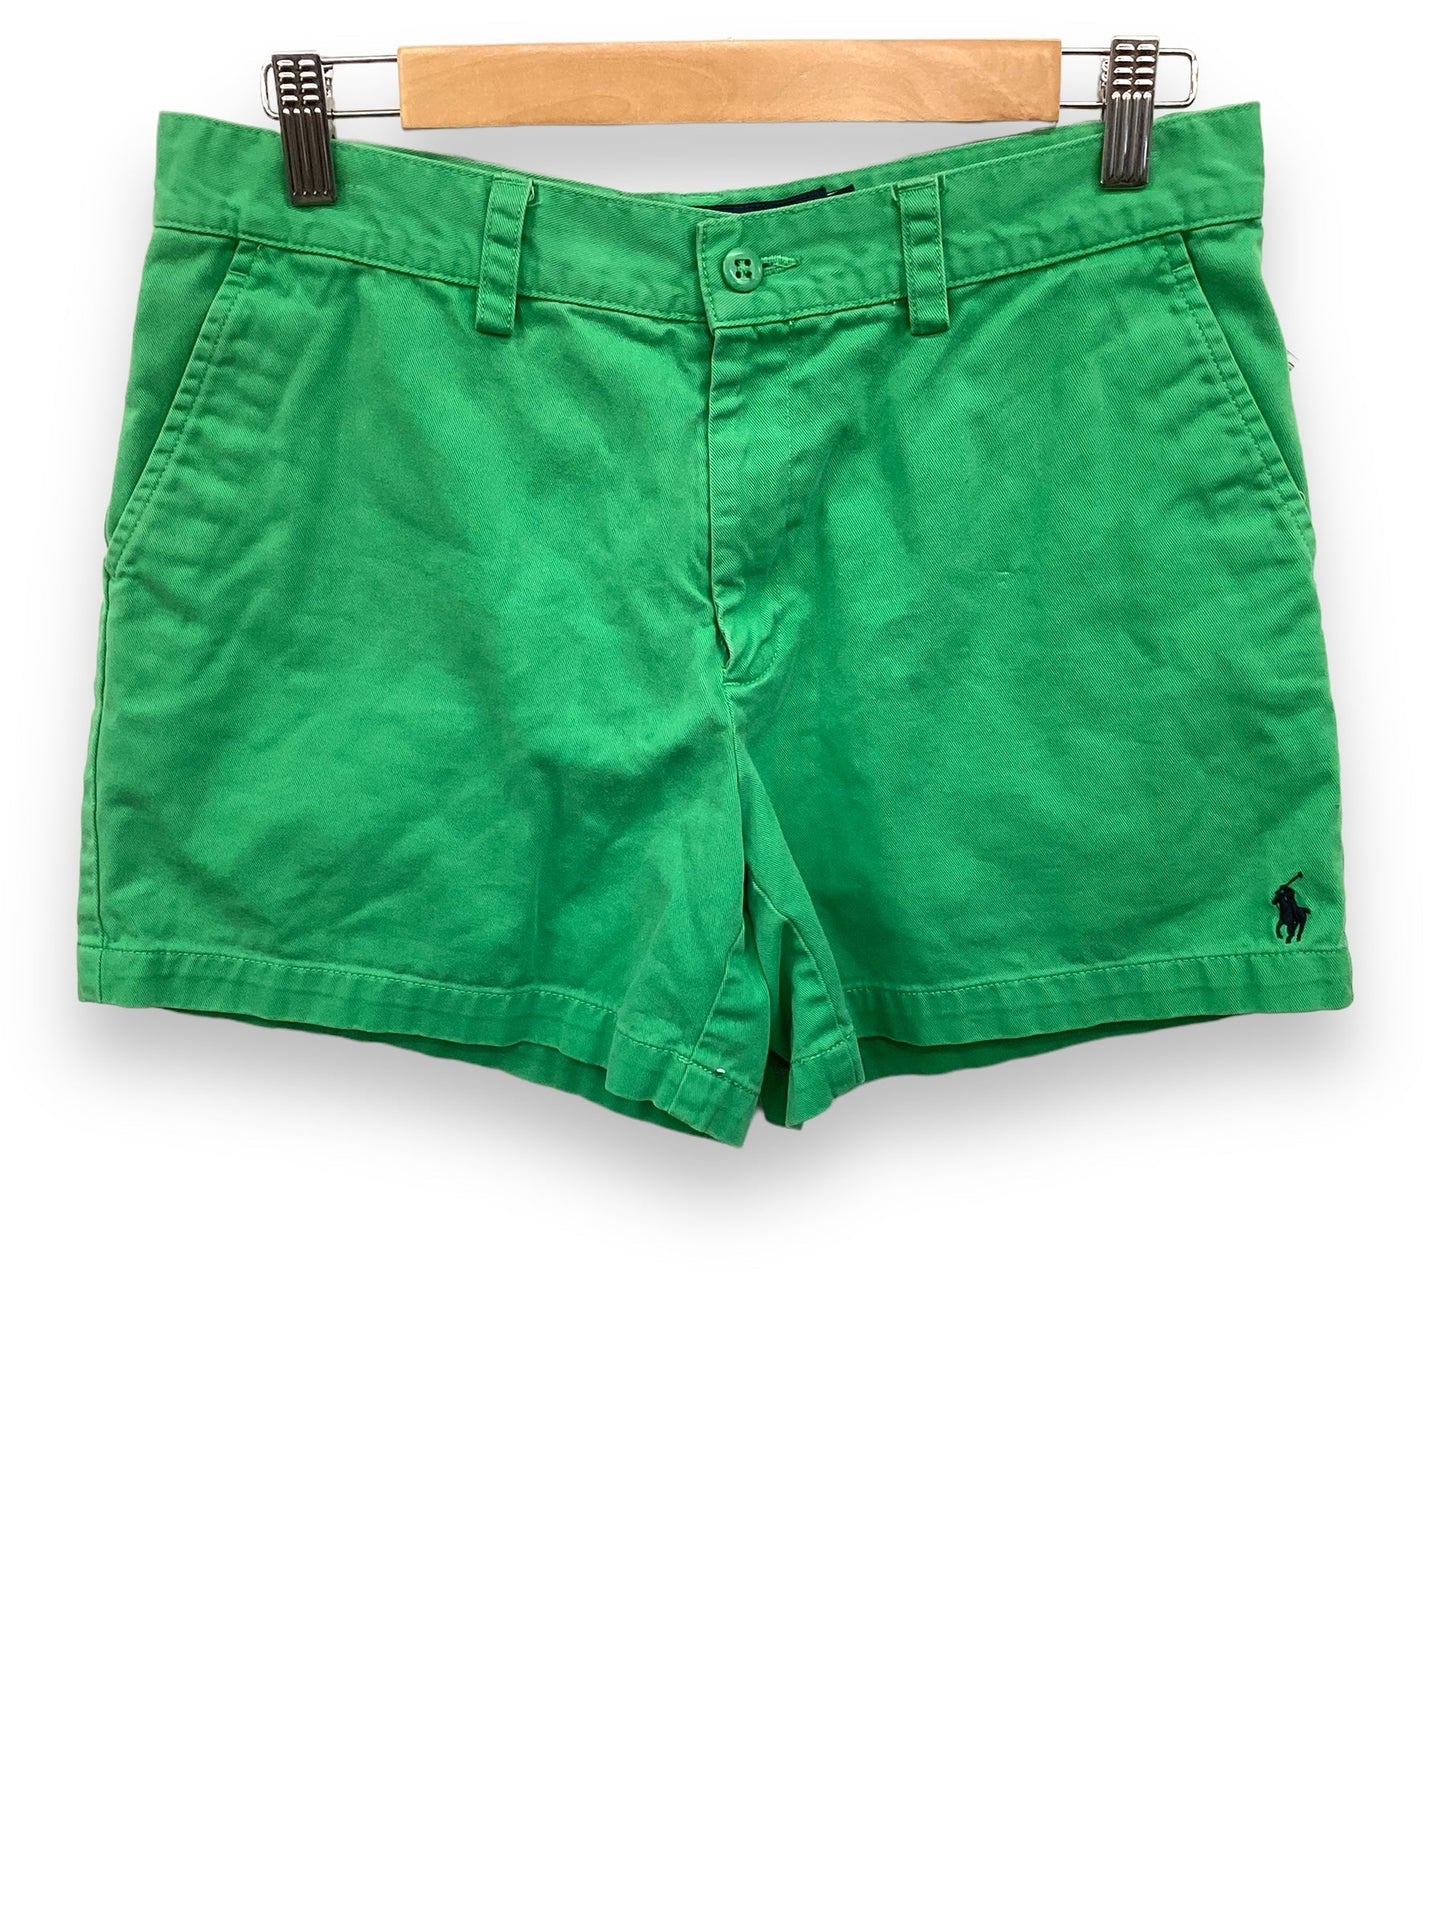 Green Shorts Ralph Lauren, Size 6